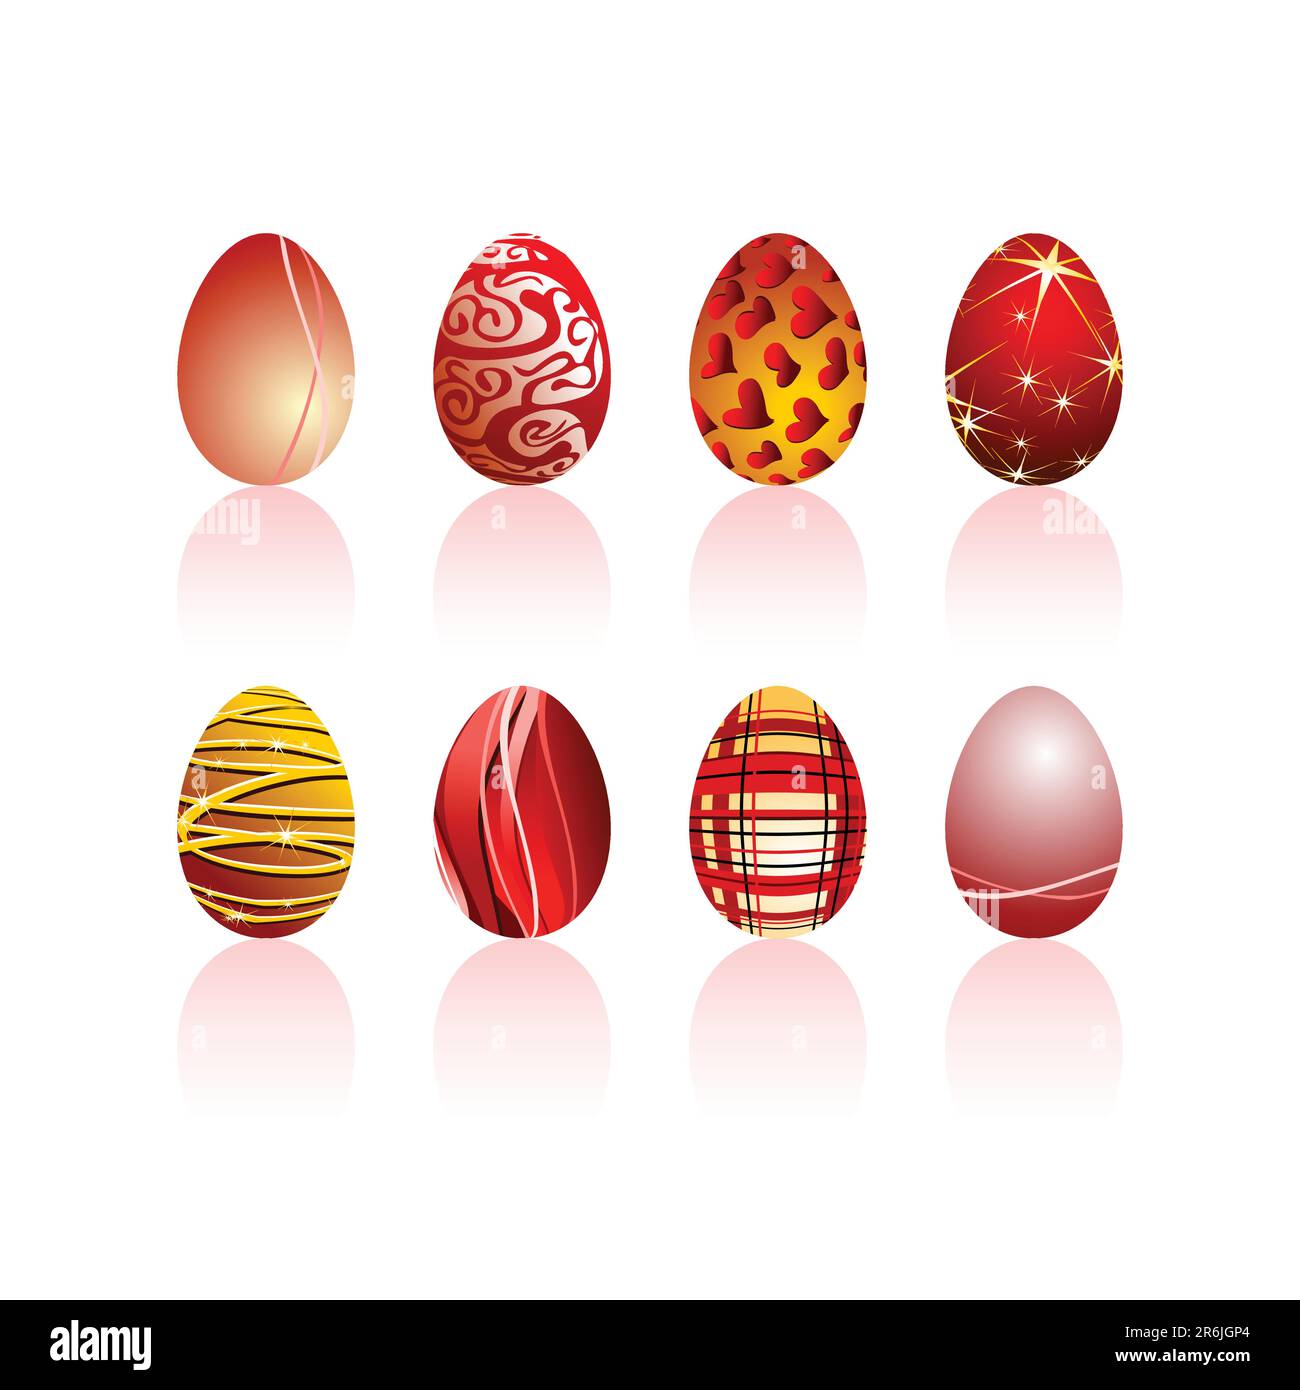 uovo, questa illustrazione può essere utile come lavoro di progettazione Illustrazione Vettoriale